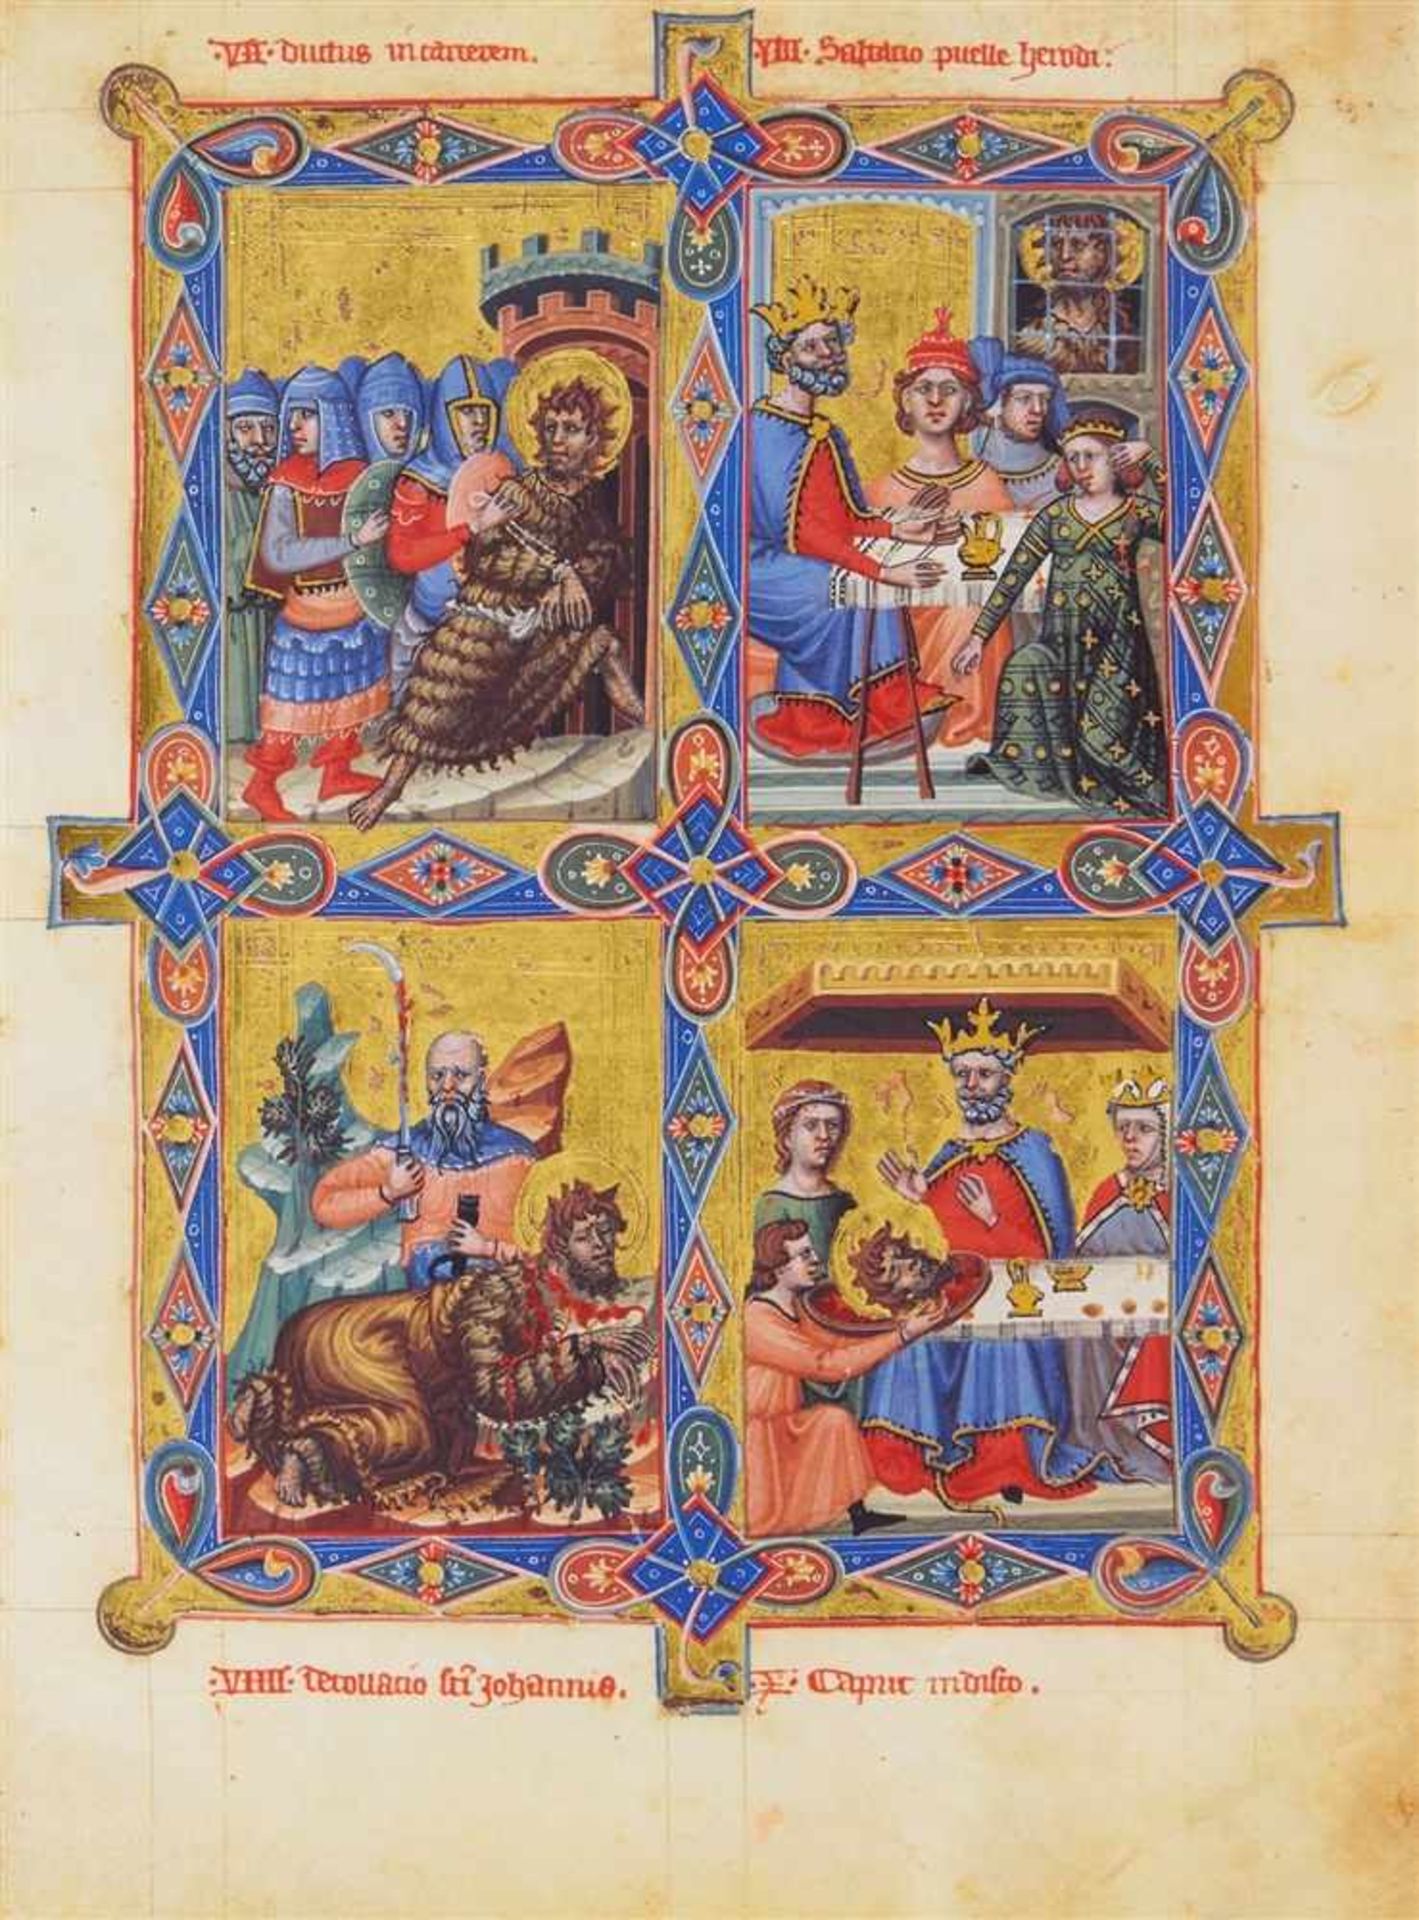 Heiligenleben. Legendarium der ungarischen Anjou. Vat. lat. 8541 der Biblioteca Apostolica Vaticana.